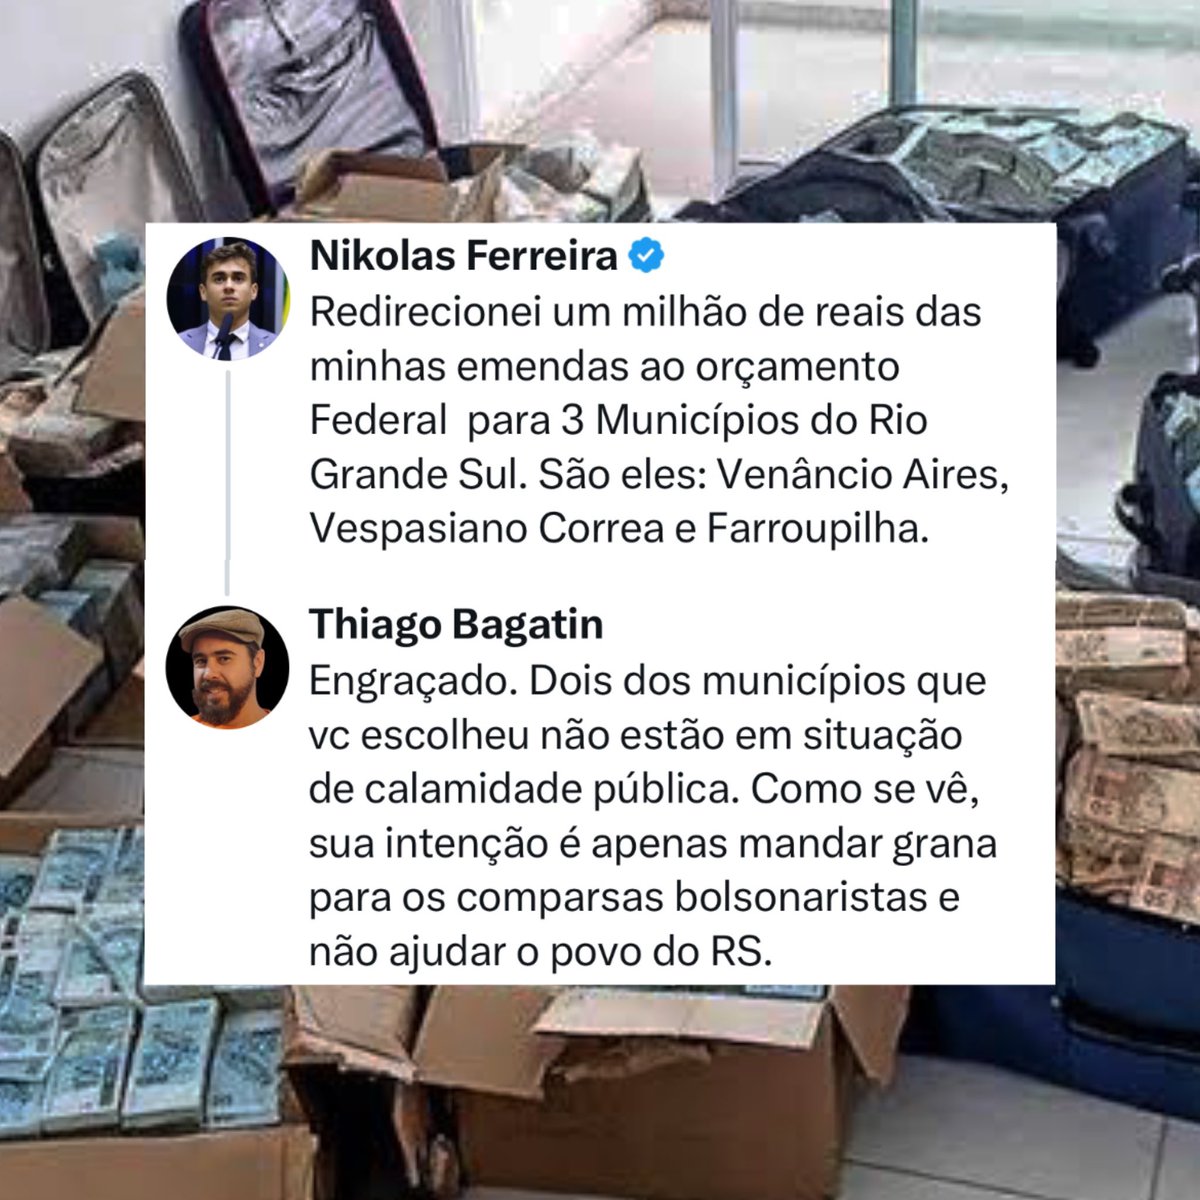 Grave! Nikolas Chupetinha está se aproveitando da tragédia pra direcionar dinheiro público para os comparsas bolsonaristas. Denunciem!